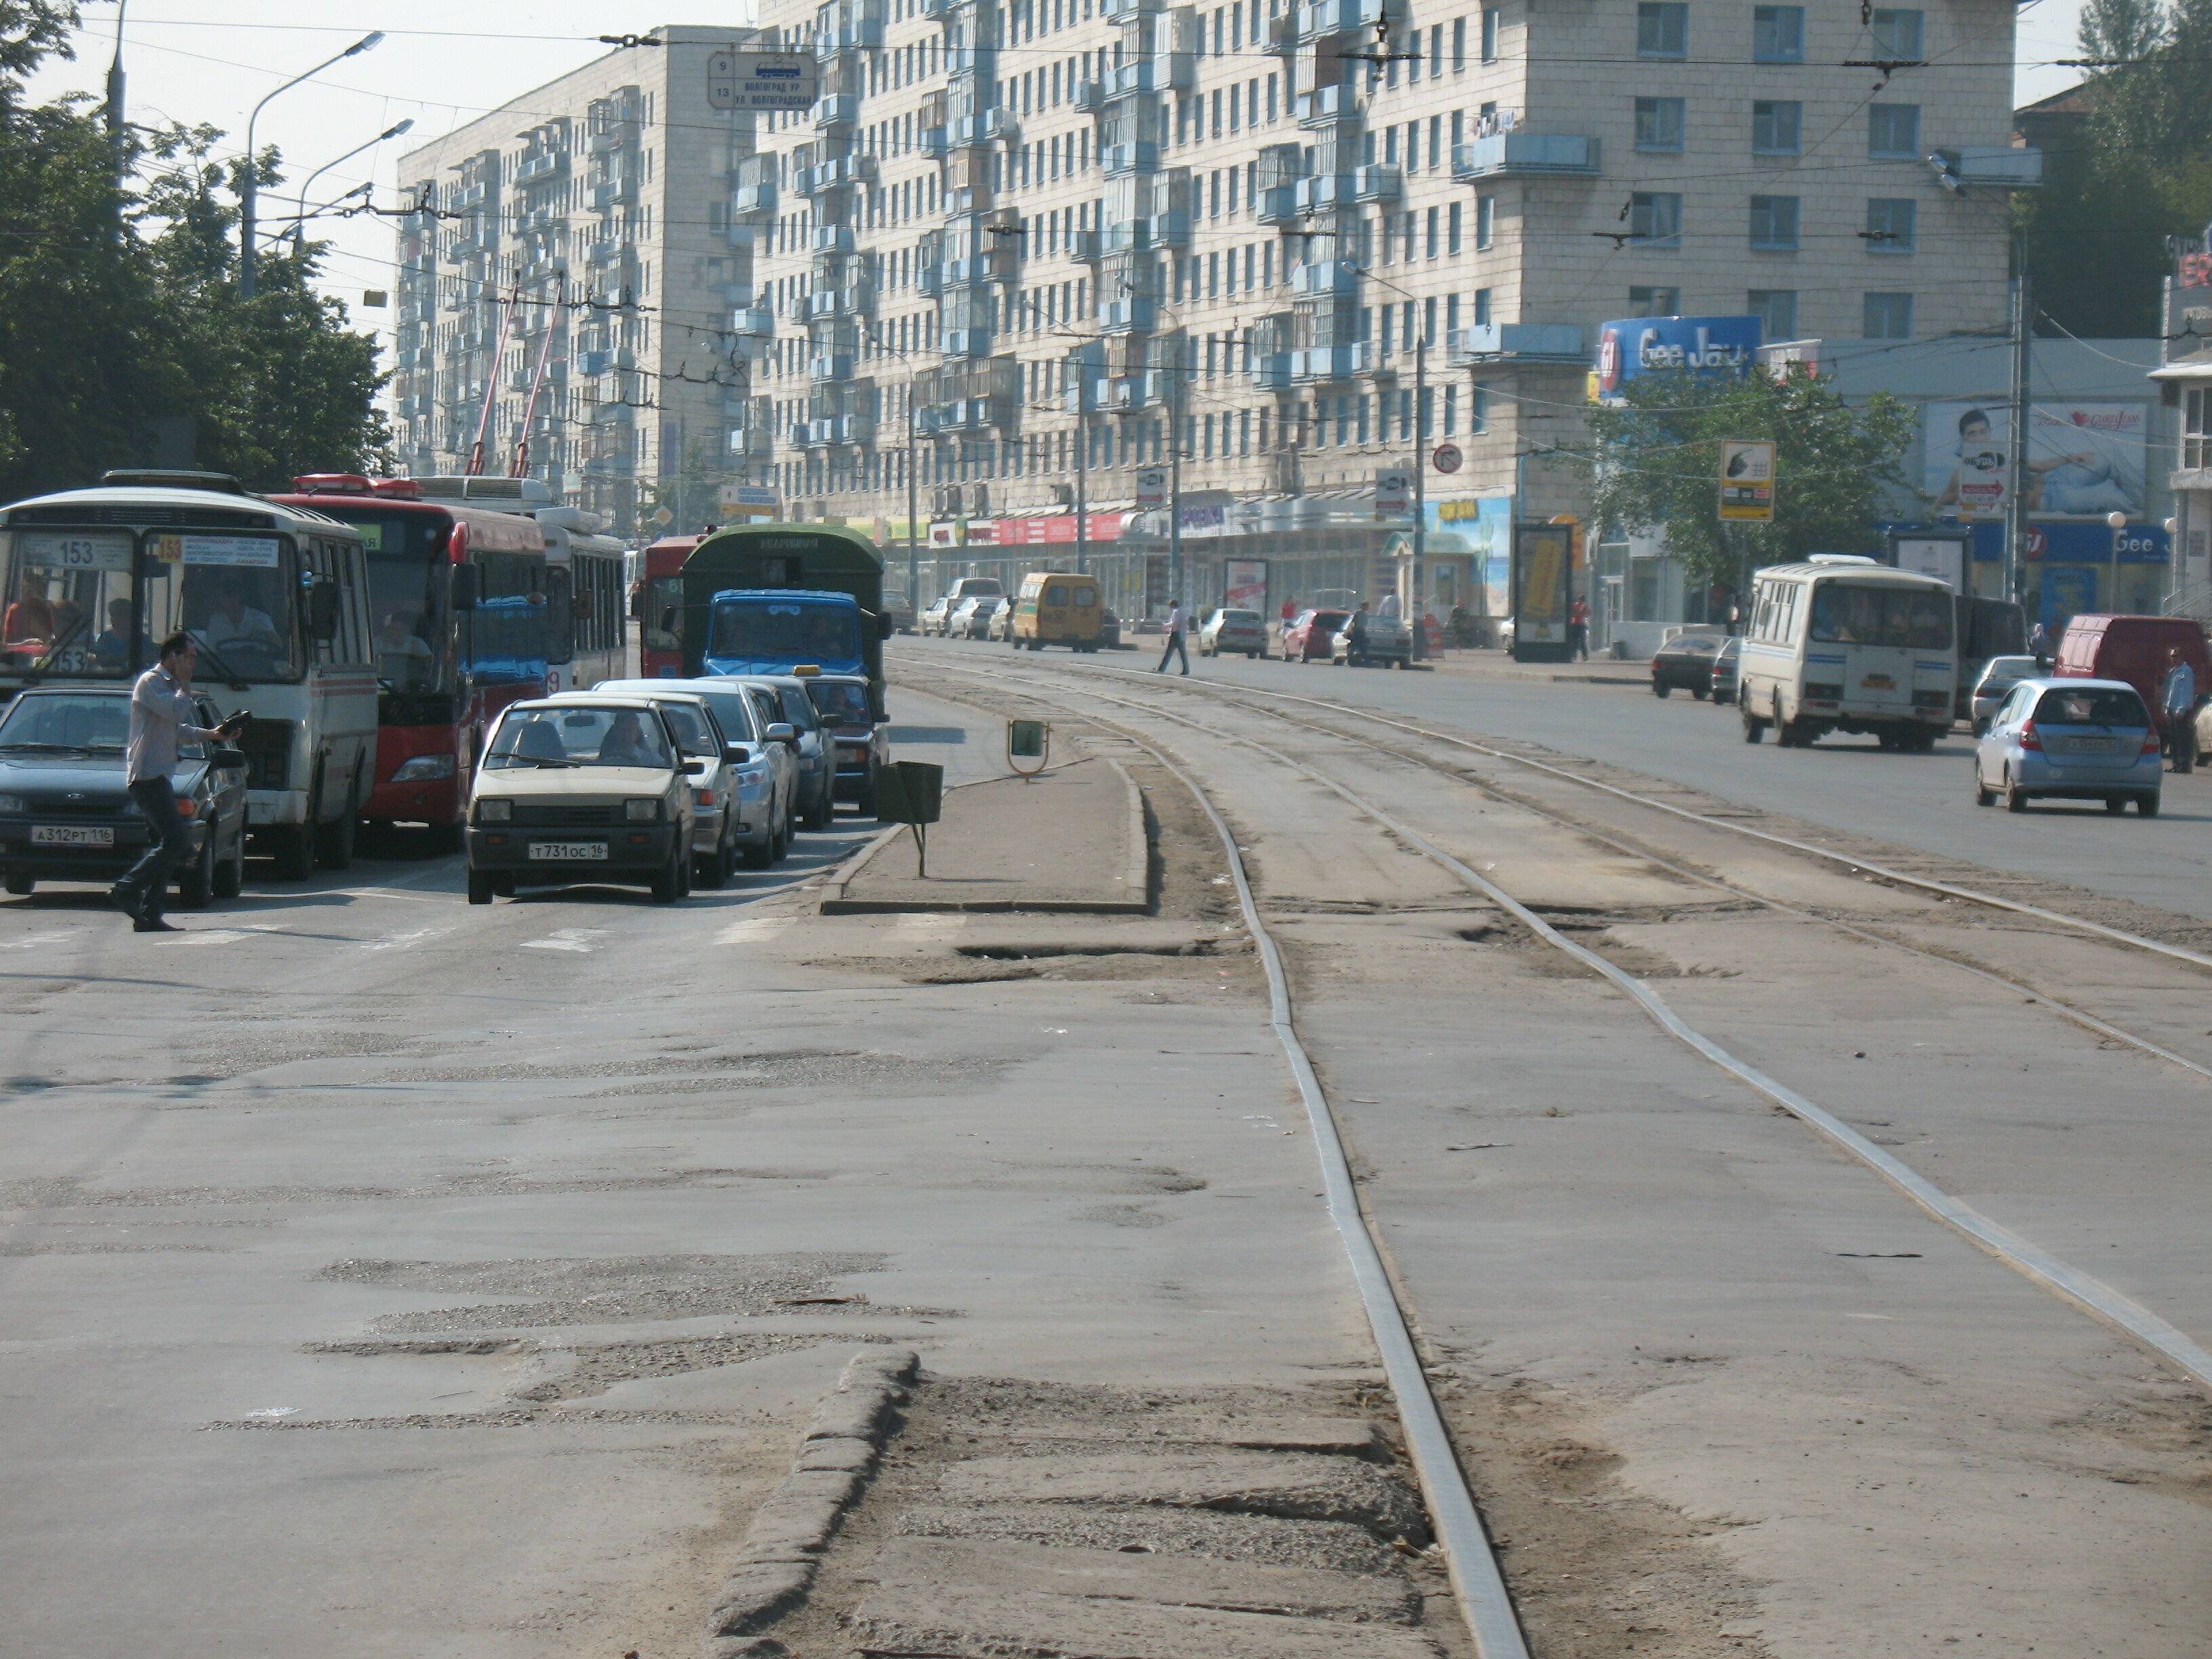 Улица Декабристов. Трамвайная линия будет переложена на боковую улицу через несколько лет